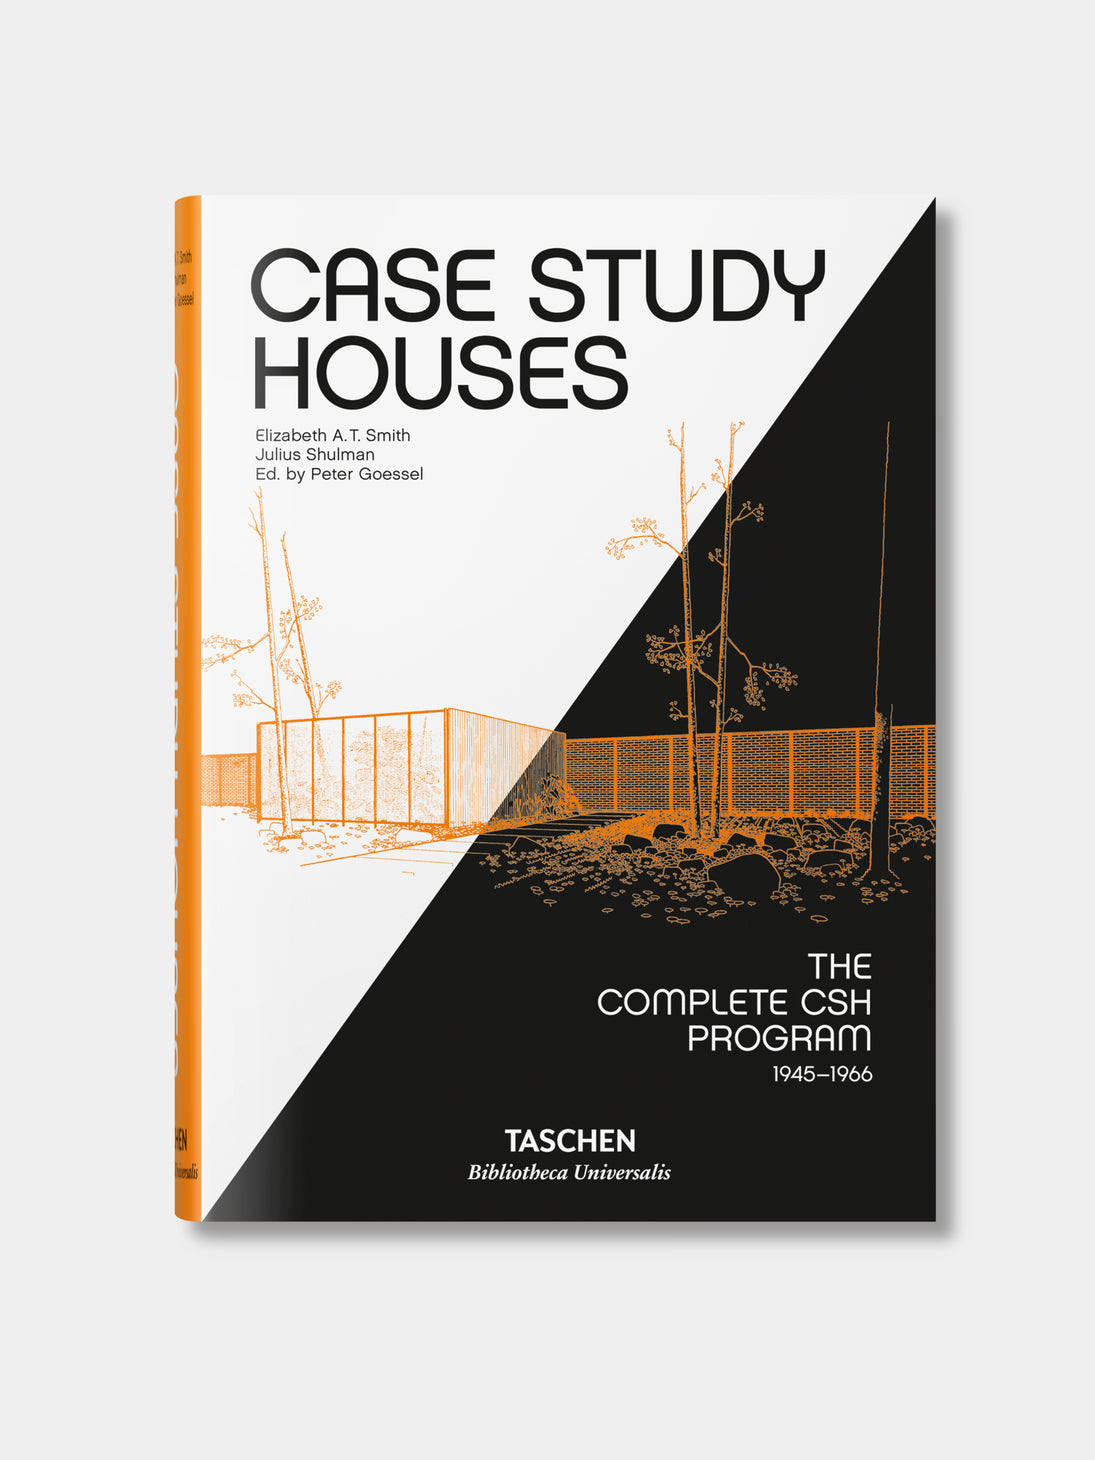 Kauchy_Taschen_Book_Case_Study_Houses